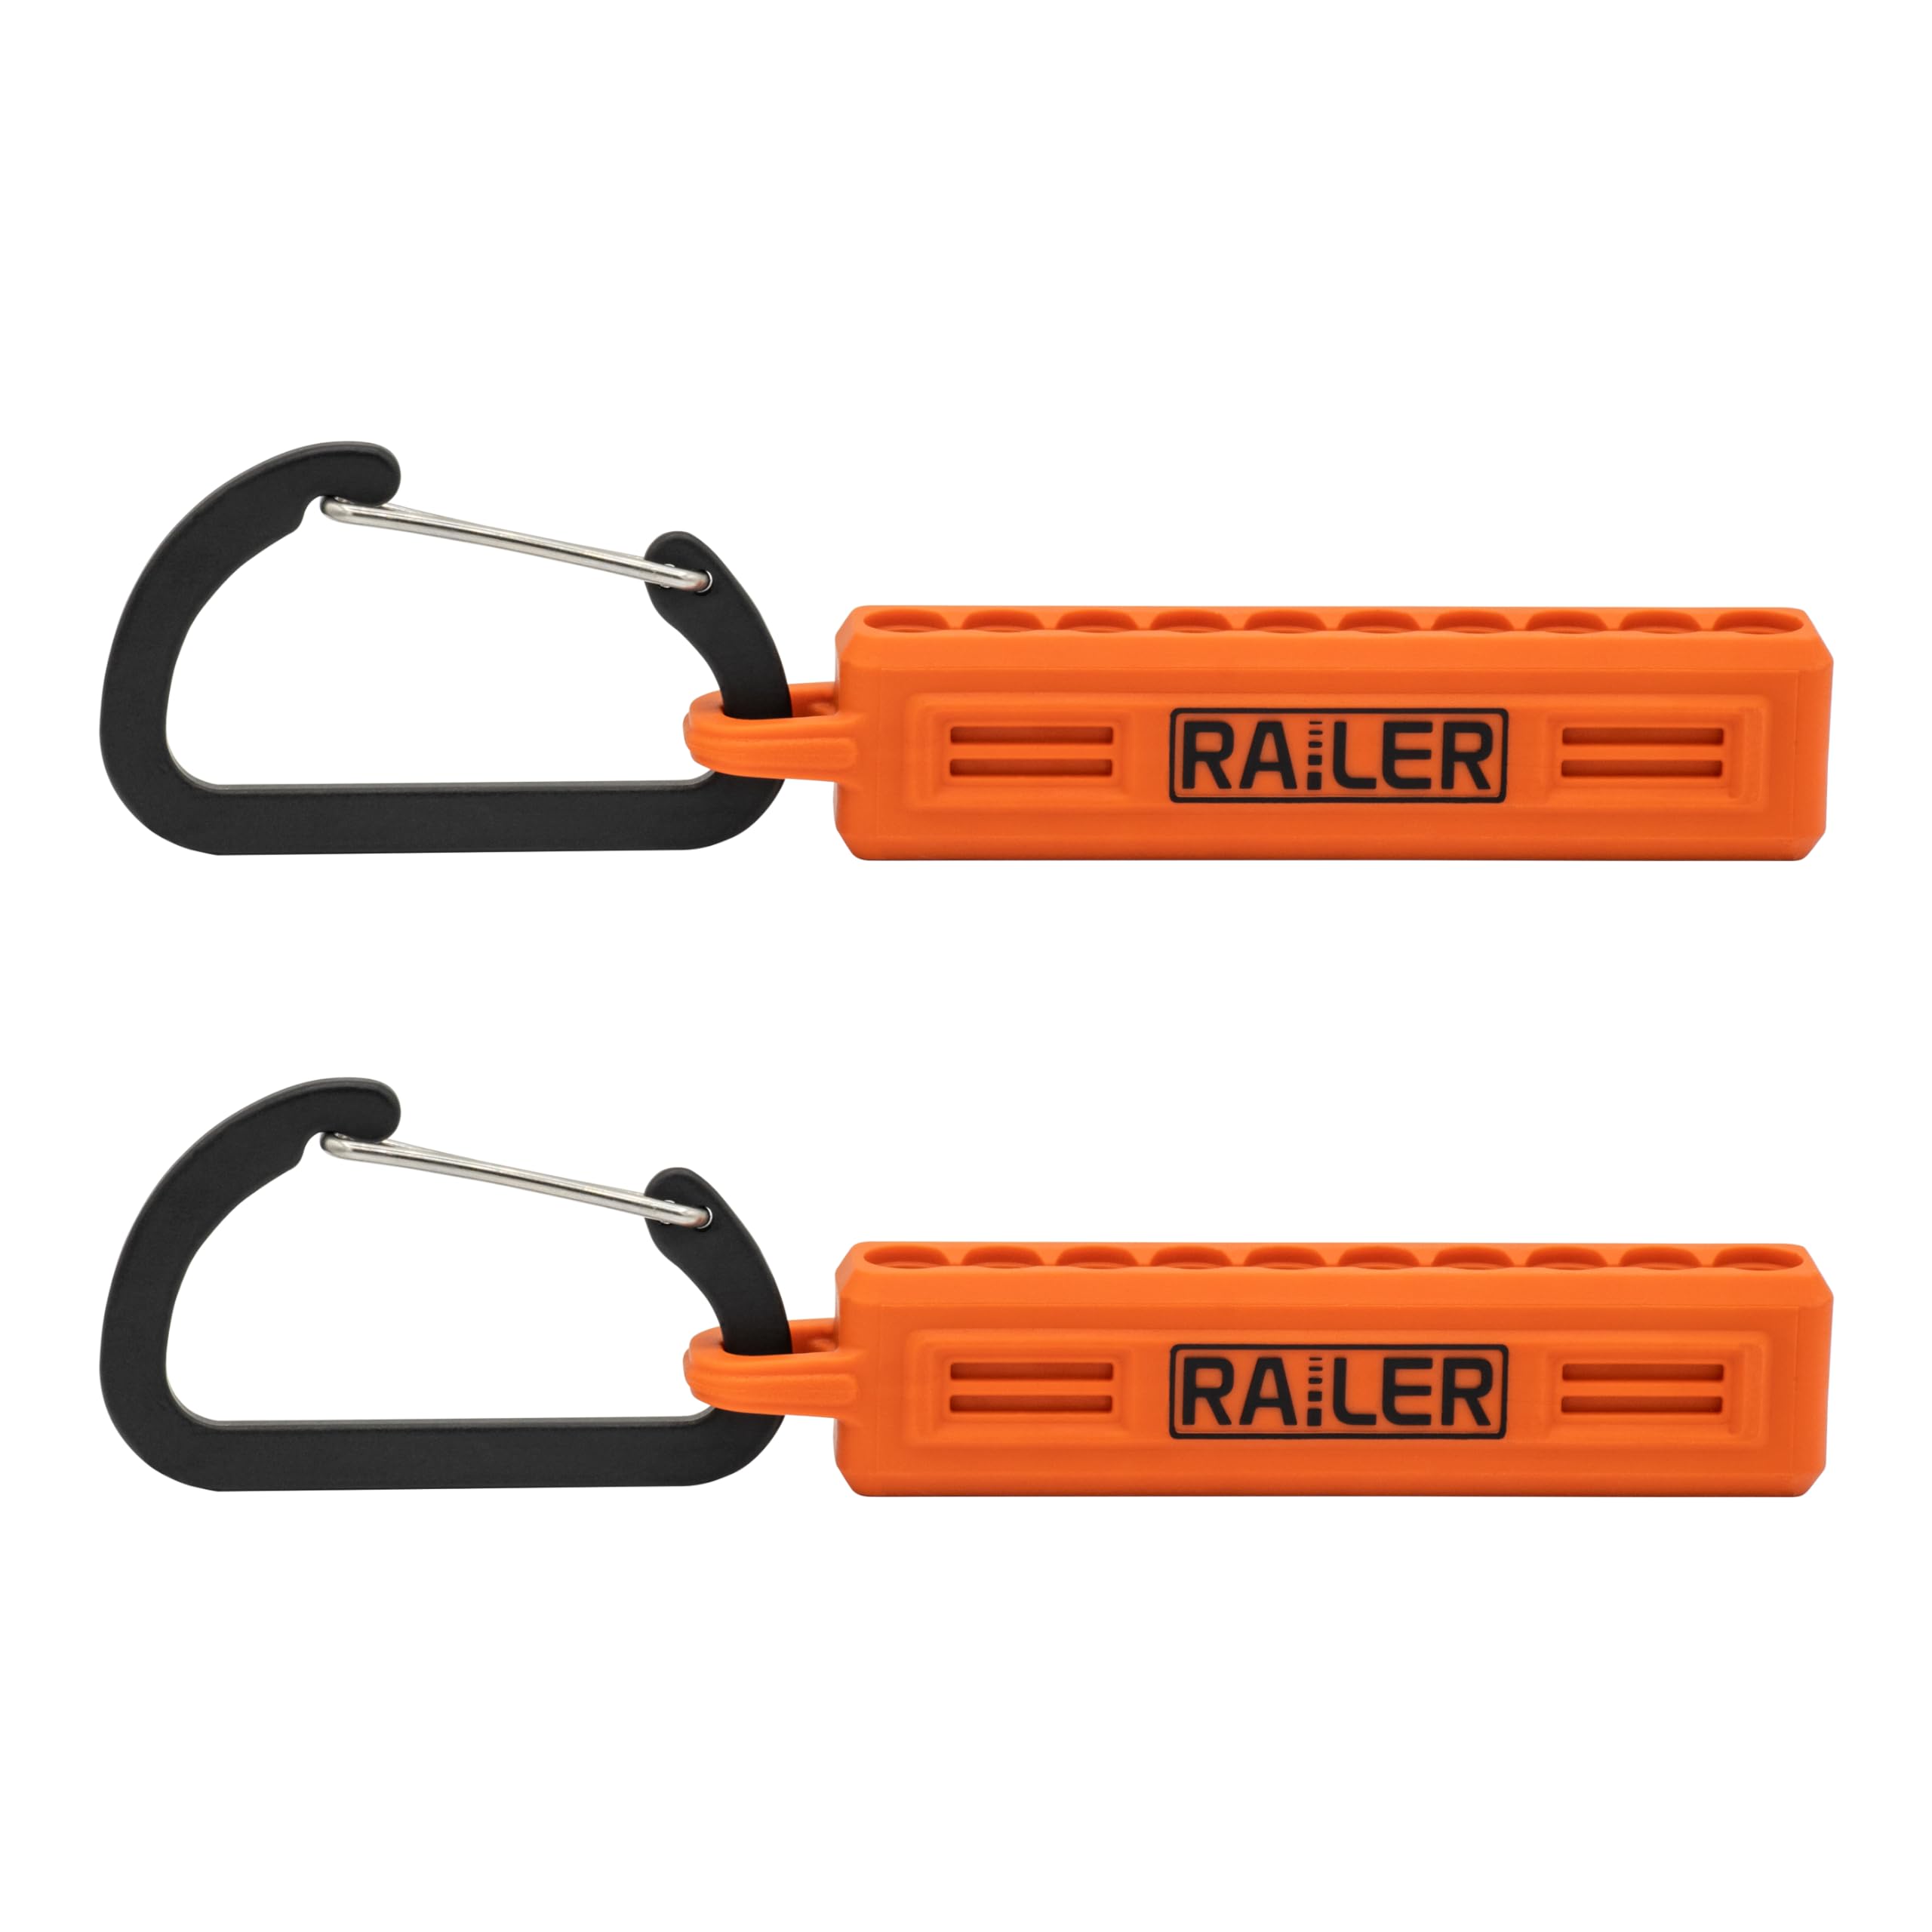 Screwdriver Bit Holder Storage Organizer – Railer 10-Hole Orange Bit Holder with Carabiner - 2 Pack